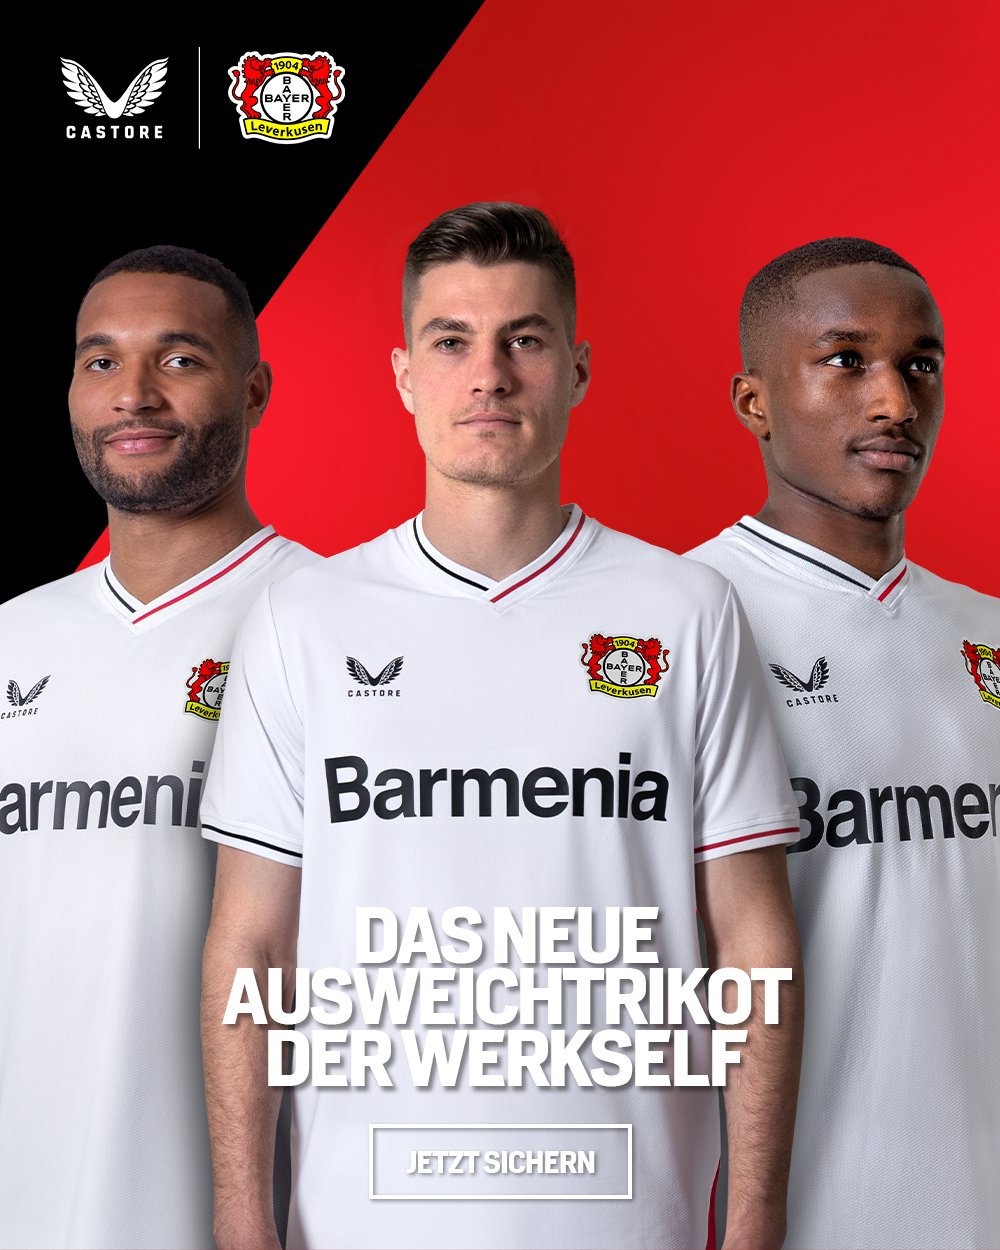 Bayer 04 Leverkusen on Twitter: "Die Spielkleidung der #Werkself ist  komplett! Das hier ist unser Ausweichtrikot. 😍 Welches Trikot ist euer  Favorit? https://t.co/rcyi6GPi2u #Bayer04 | #Werkself  https://t.co/4Fwj6qVlsl" / Twitter